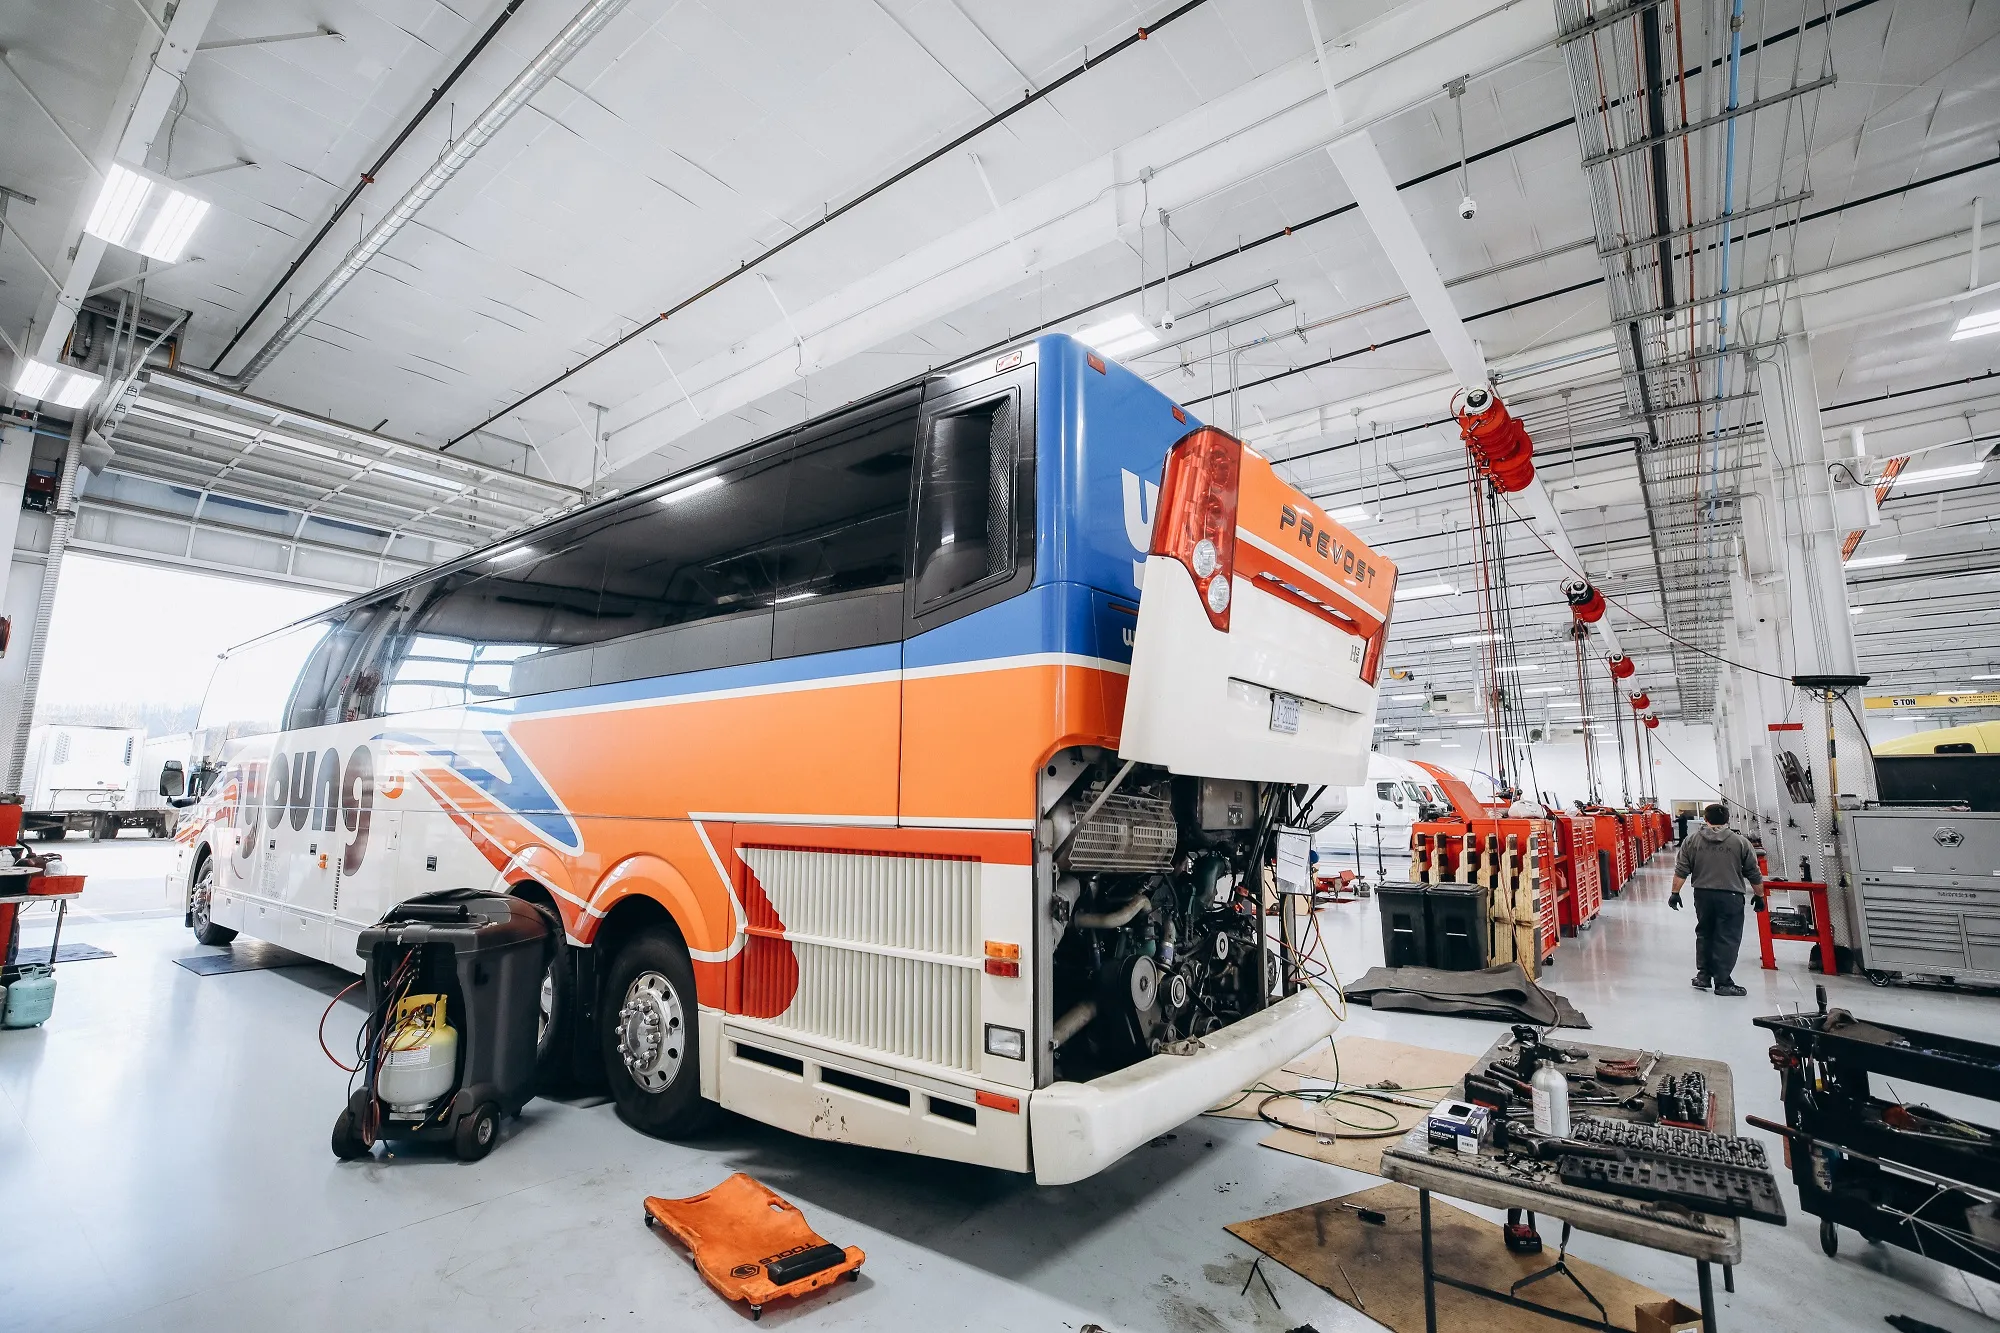 Major repair of bus truck engines